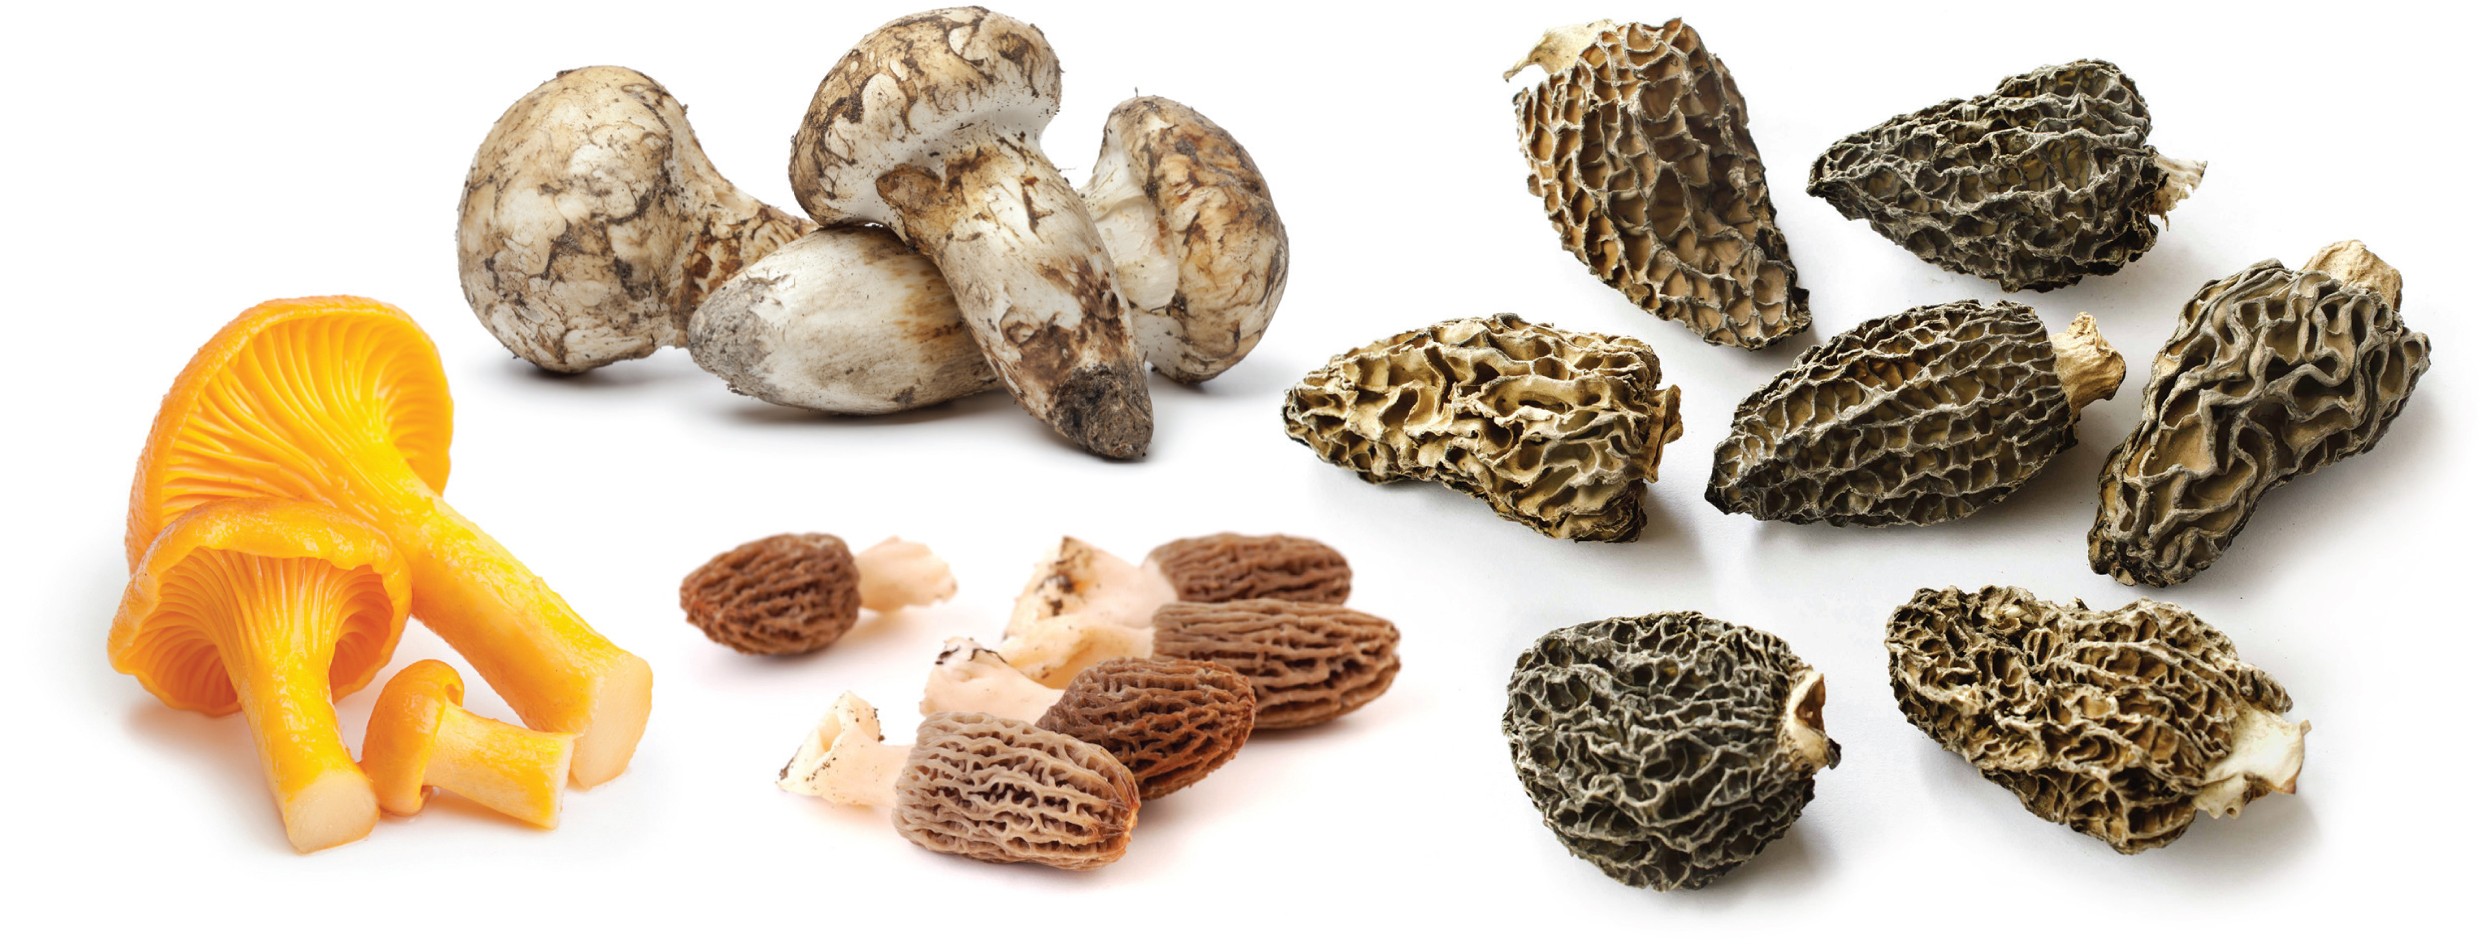 Pacific Rim Mushrooms images